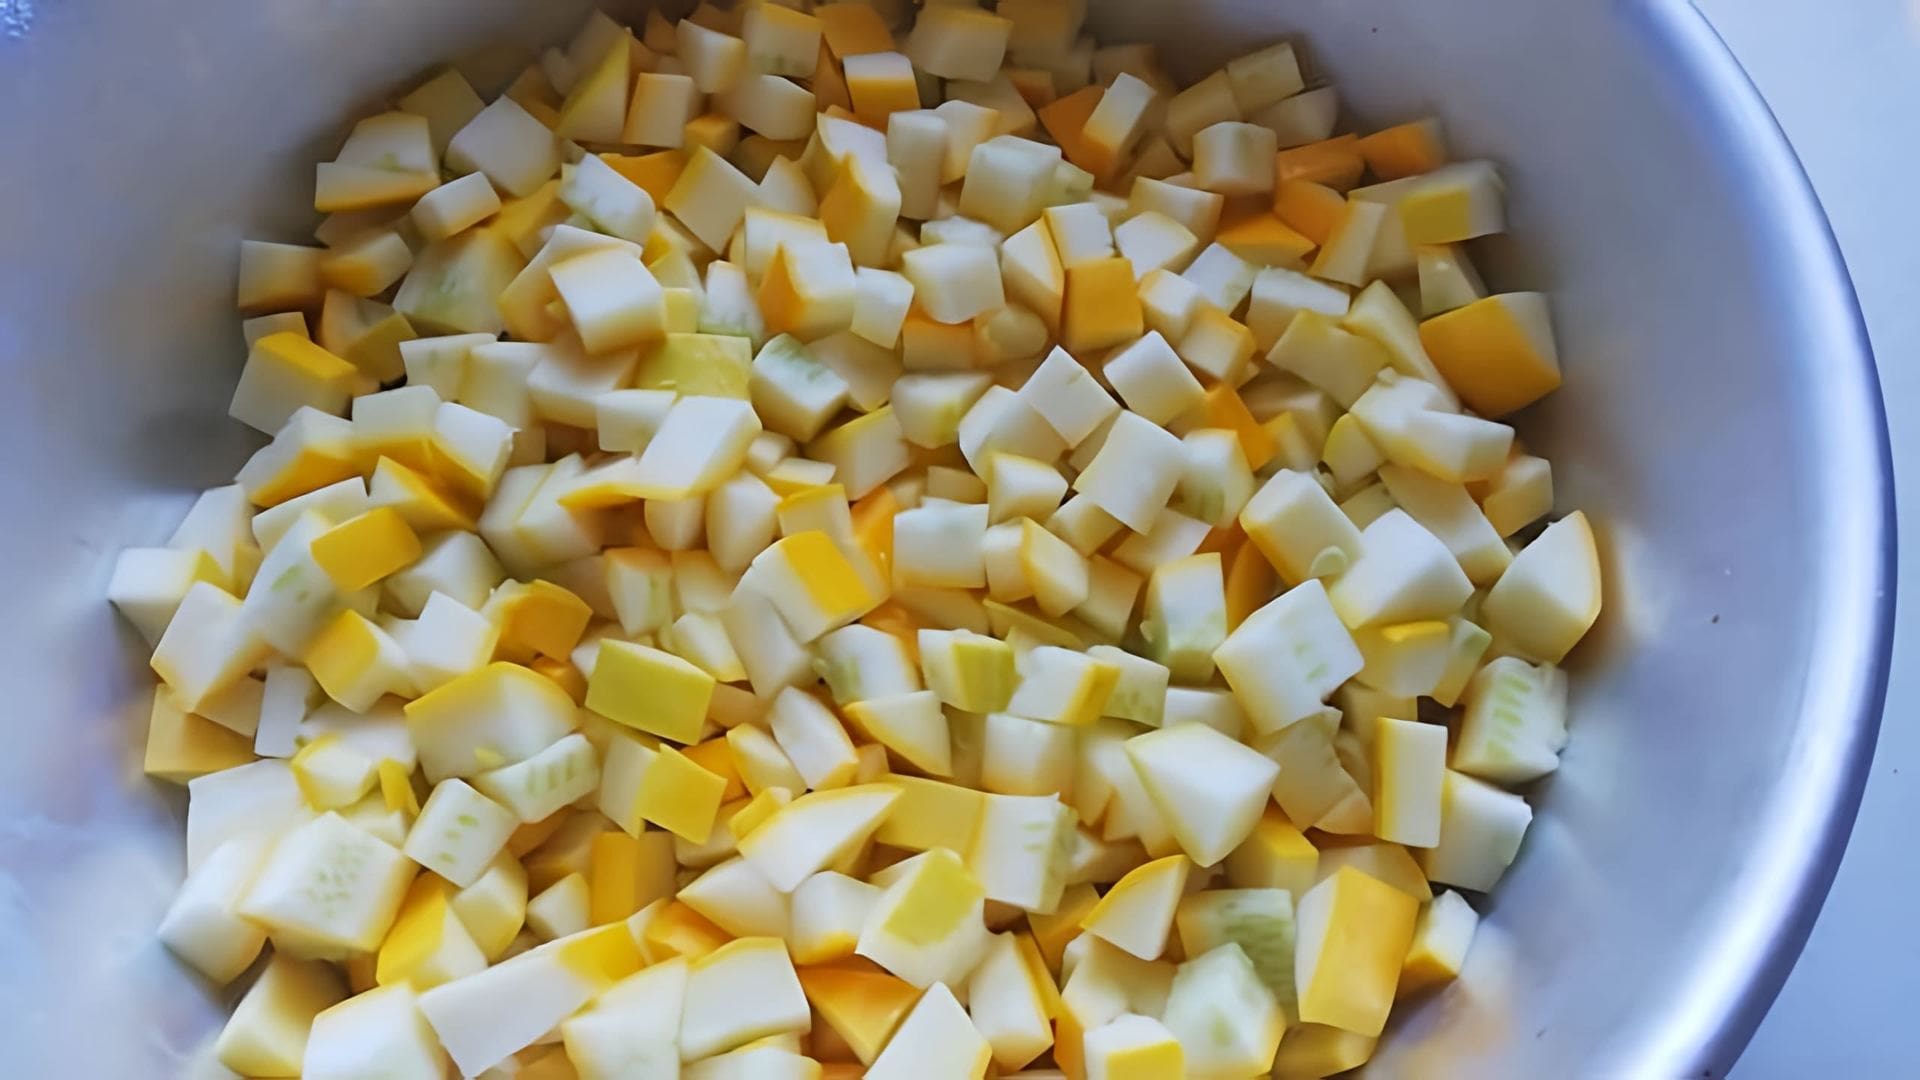 Заголовок: "Заготовки на зиму: кабачки в ананасовом соке"

Содержание видео-ролика:

1